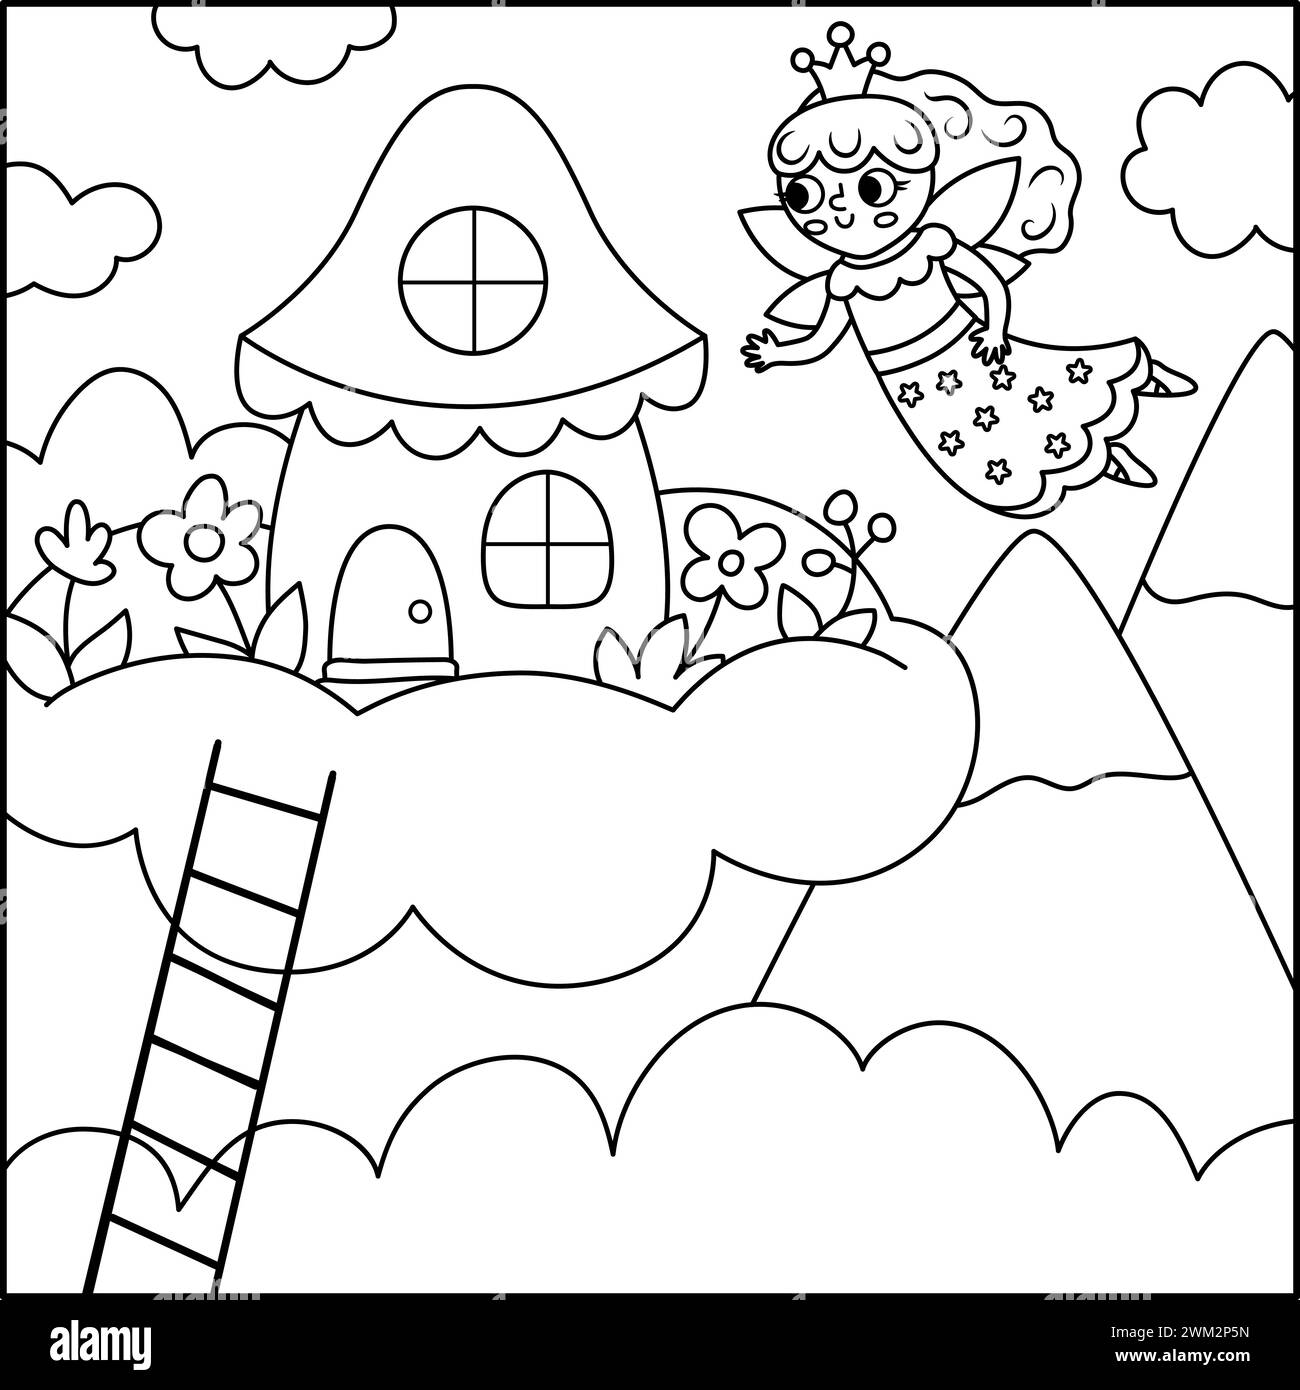 Vecteur fond carré noir et blanc avec princesse de fée volant à sa maison sur le nuage. Scène de ligne de monde magique ou fantastique. Paysage de conte de fées ou c Illustration de Vecteur